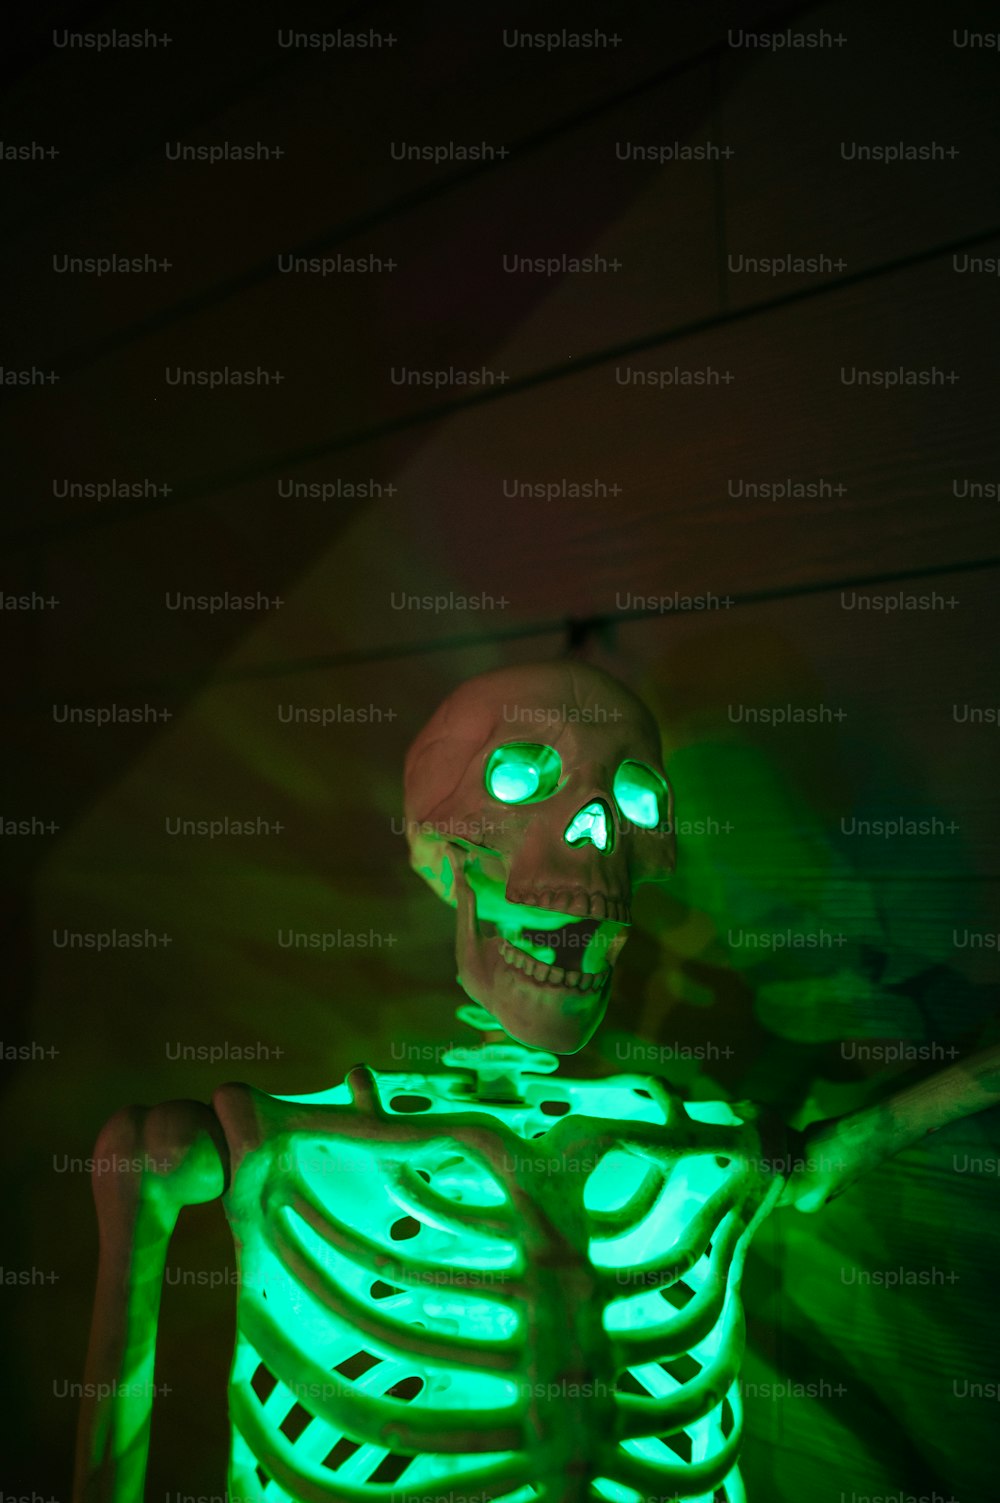 Ein Skelett mit leuchtend grünen Augen in einem dunklen Raum